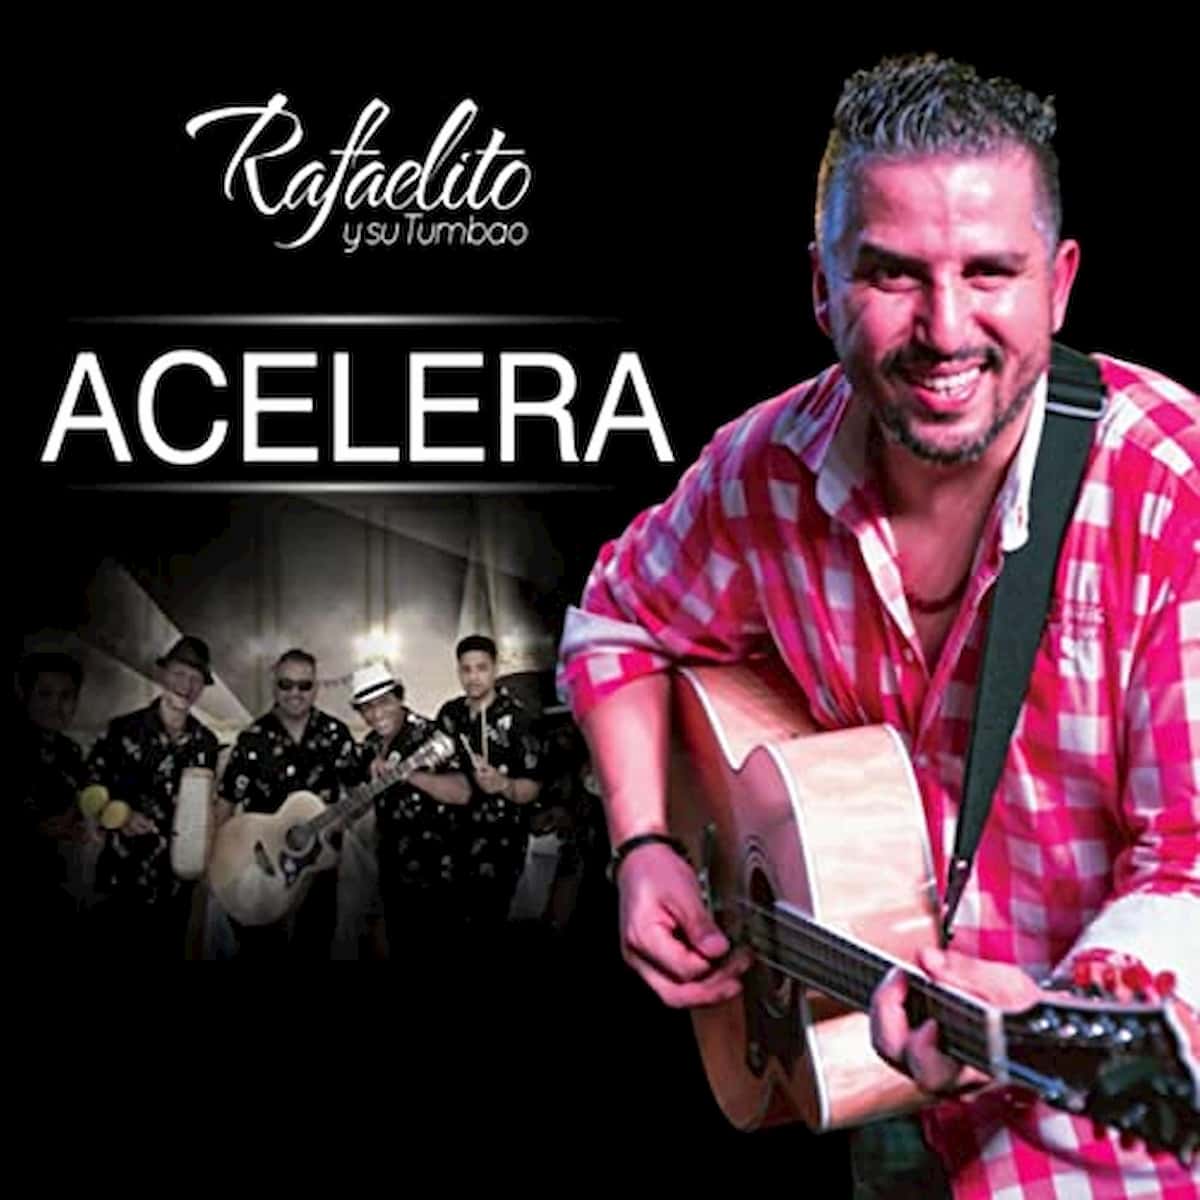 Salsa-Album Acelera von Rafaelito y su Tumbao